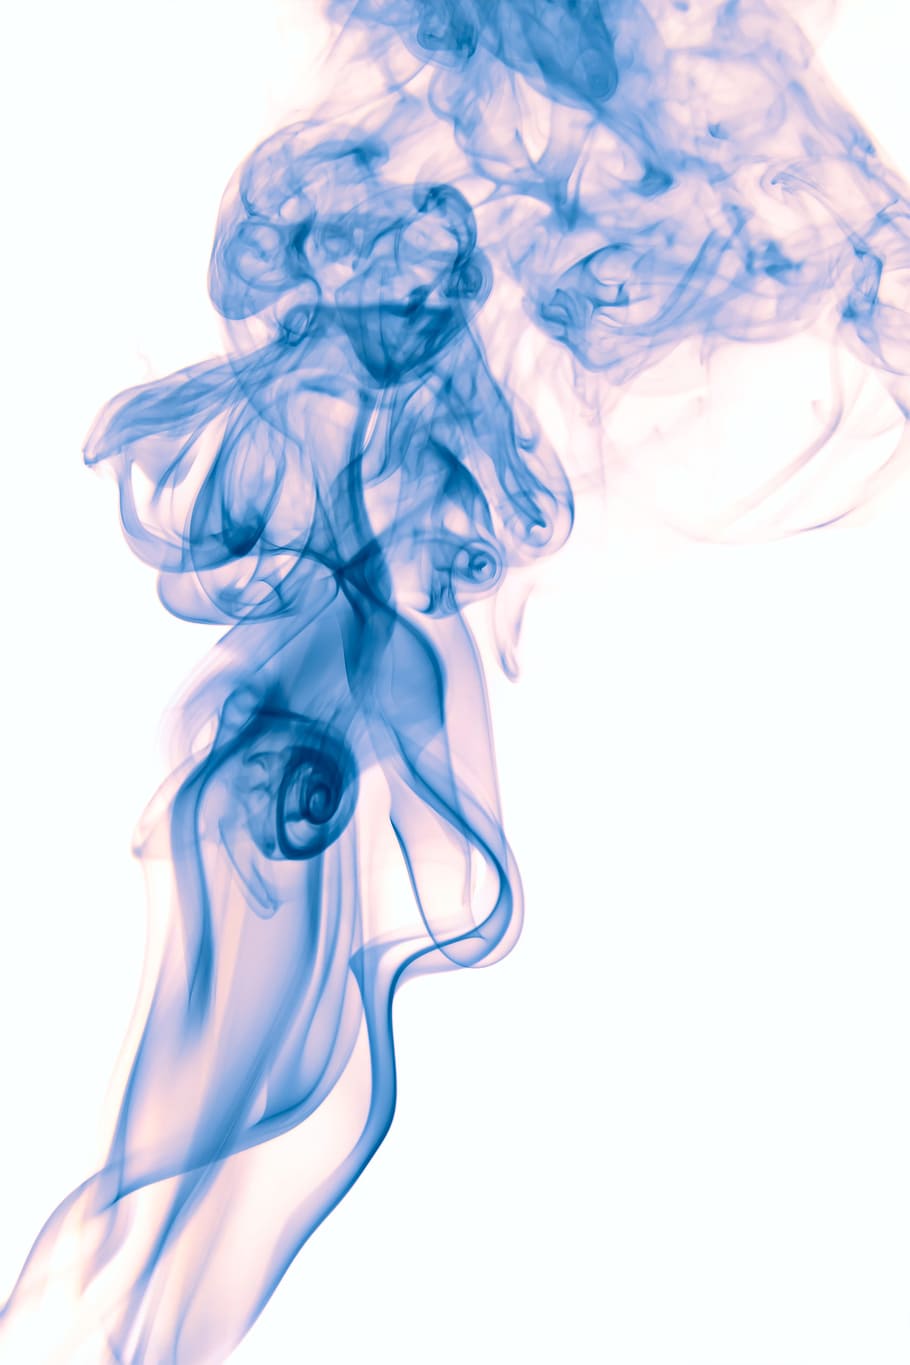 abstrato, aromaterapia, plano de fundo, cor, cheiro, fumaça, fundo branco, tiro do estúdio, movimento, fumaça - estrutura física